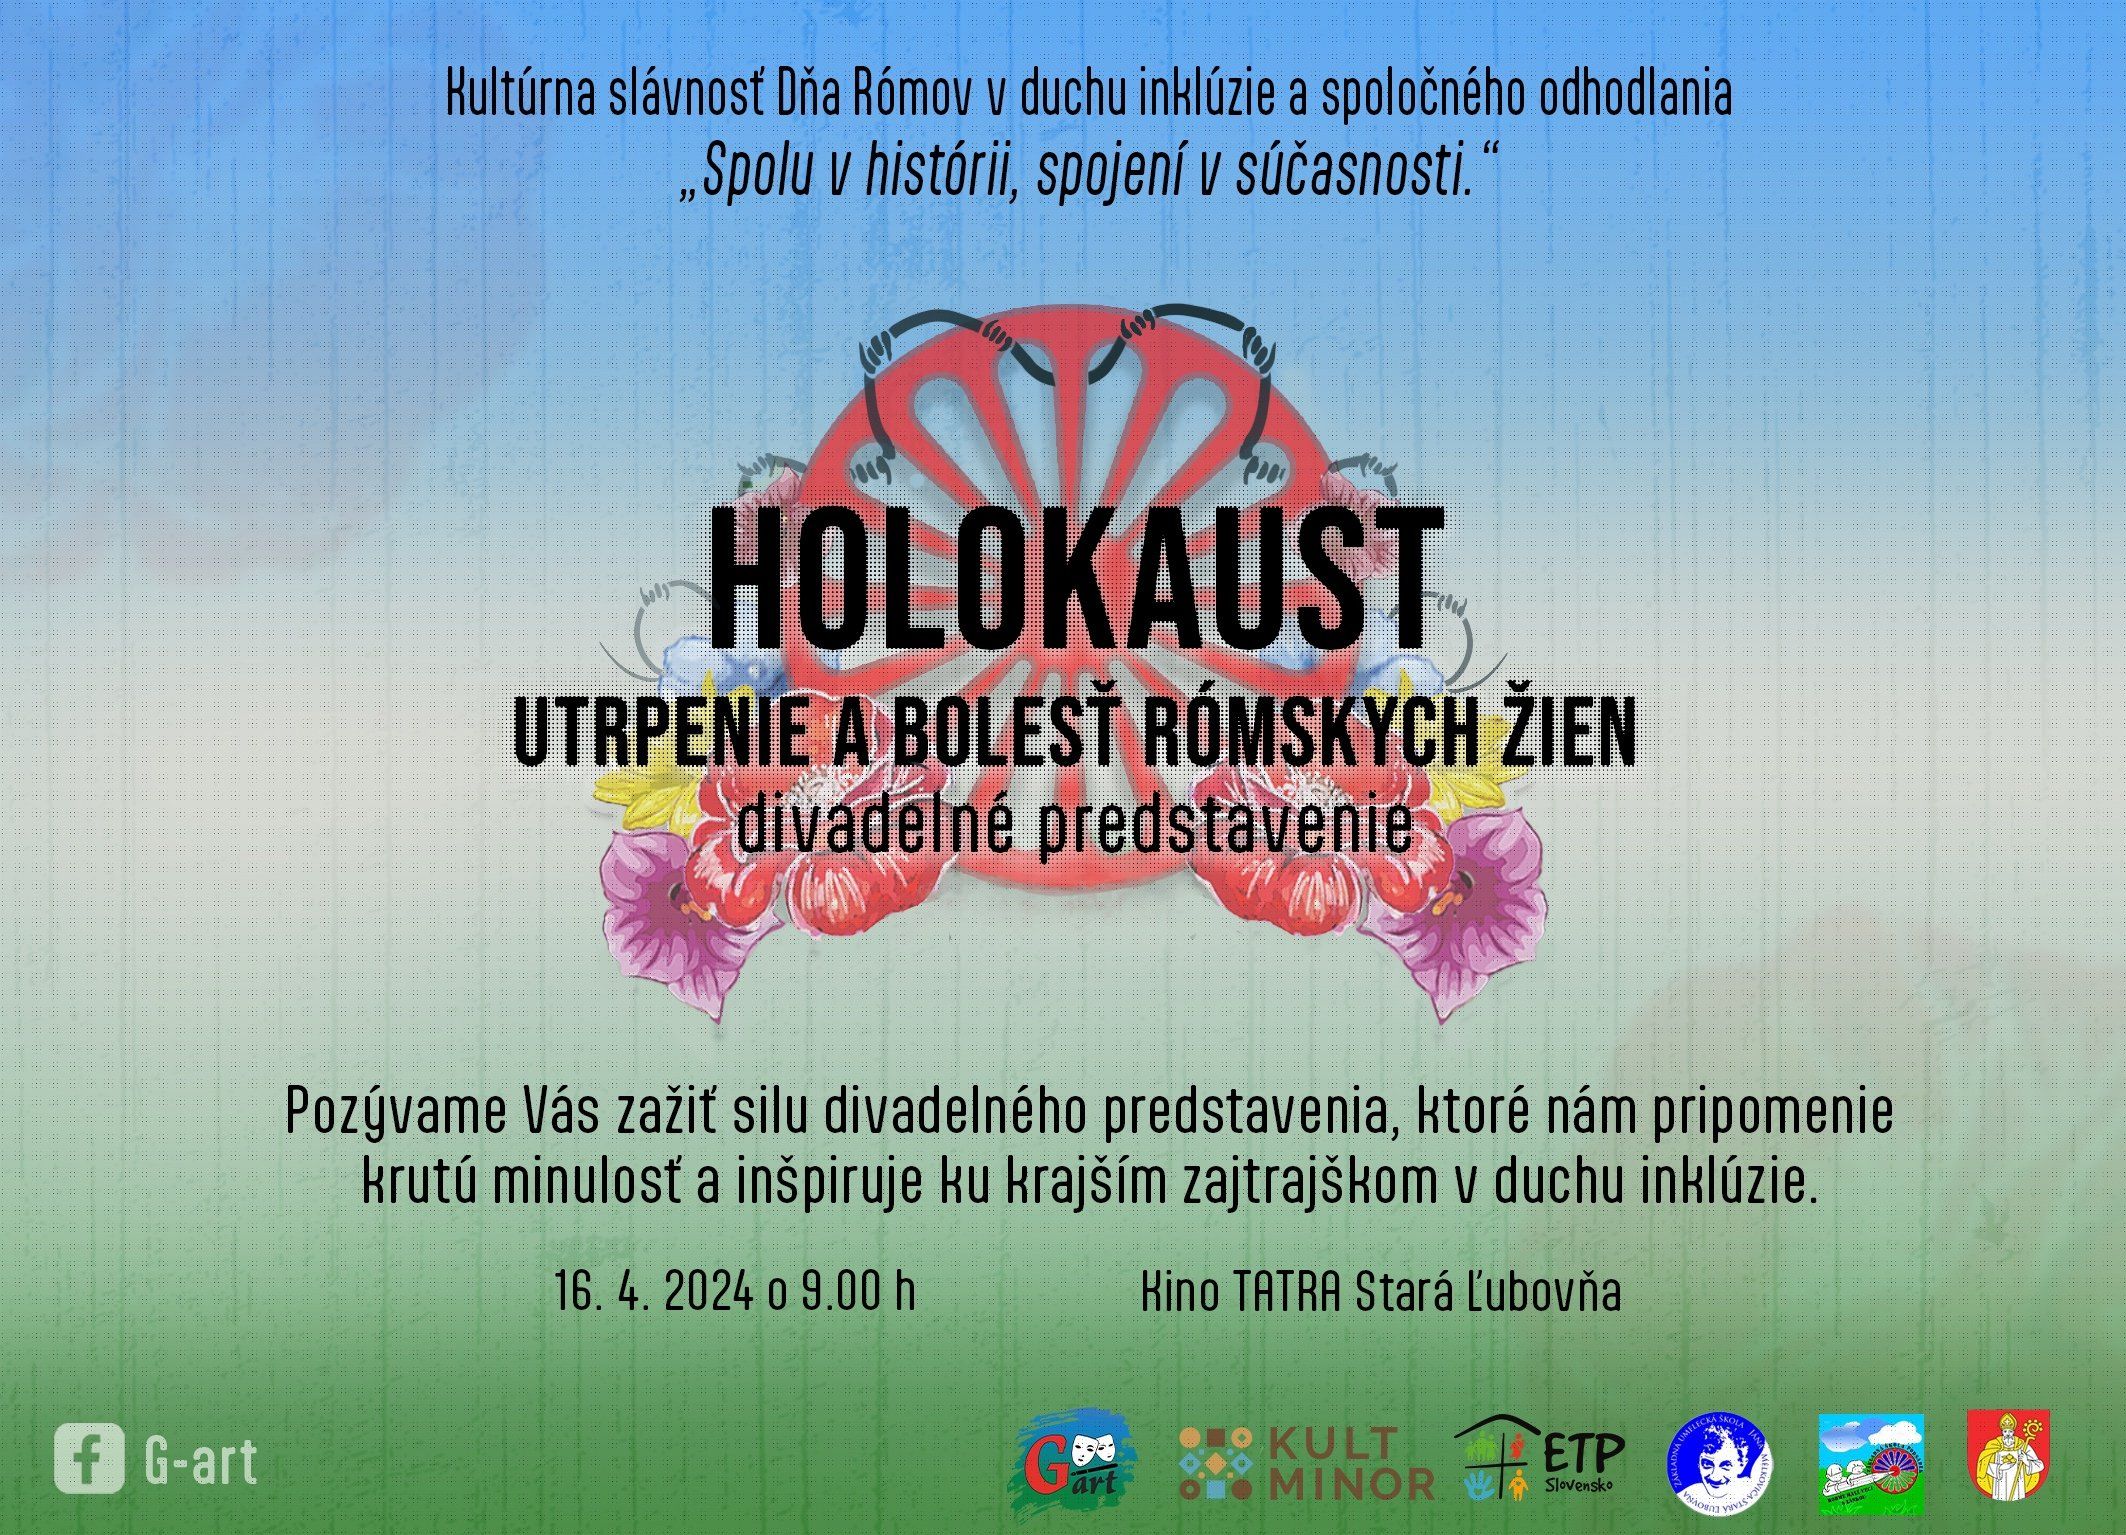 HOLOKAUST - Utrpenie a bolesť rómskych žien